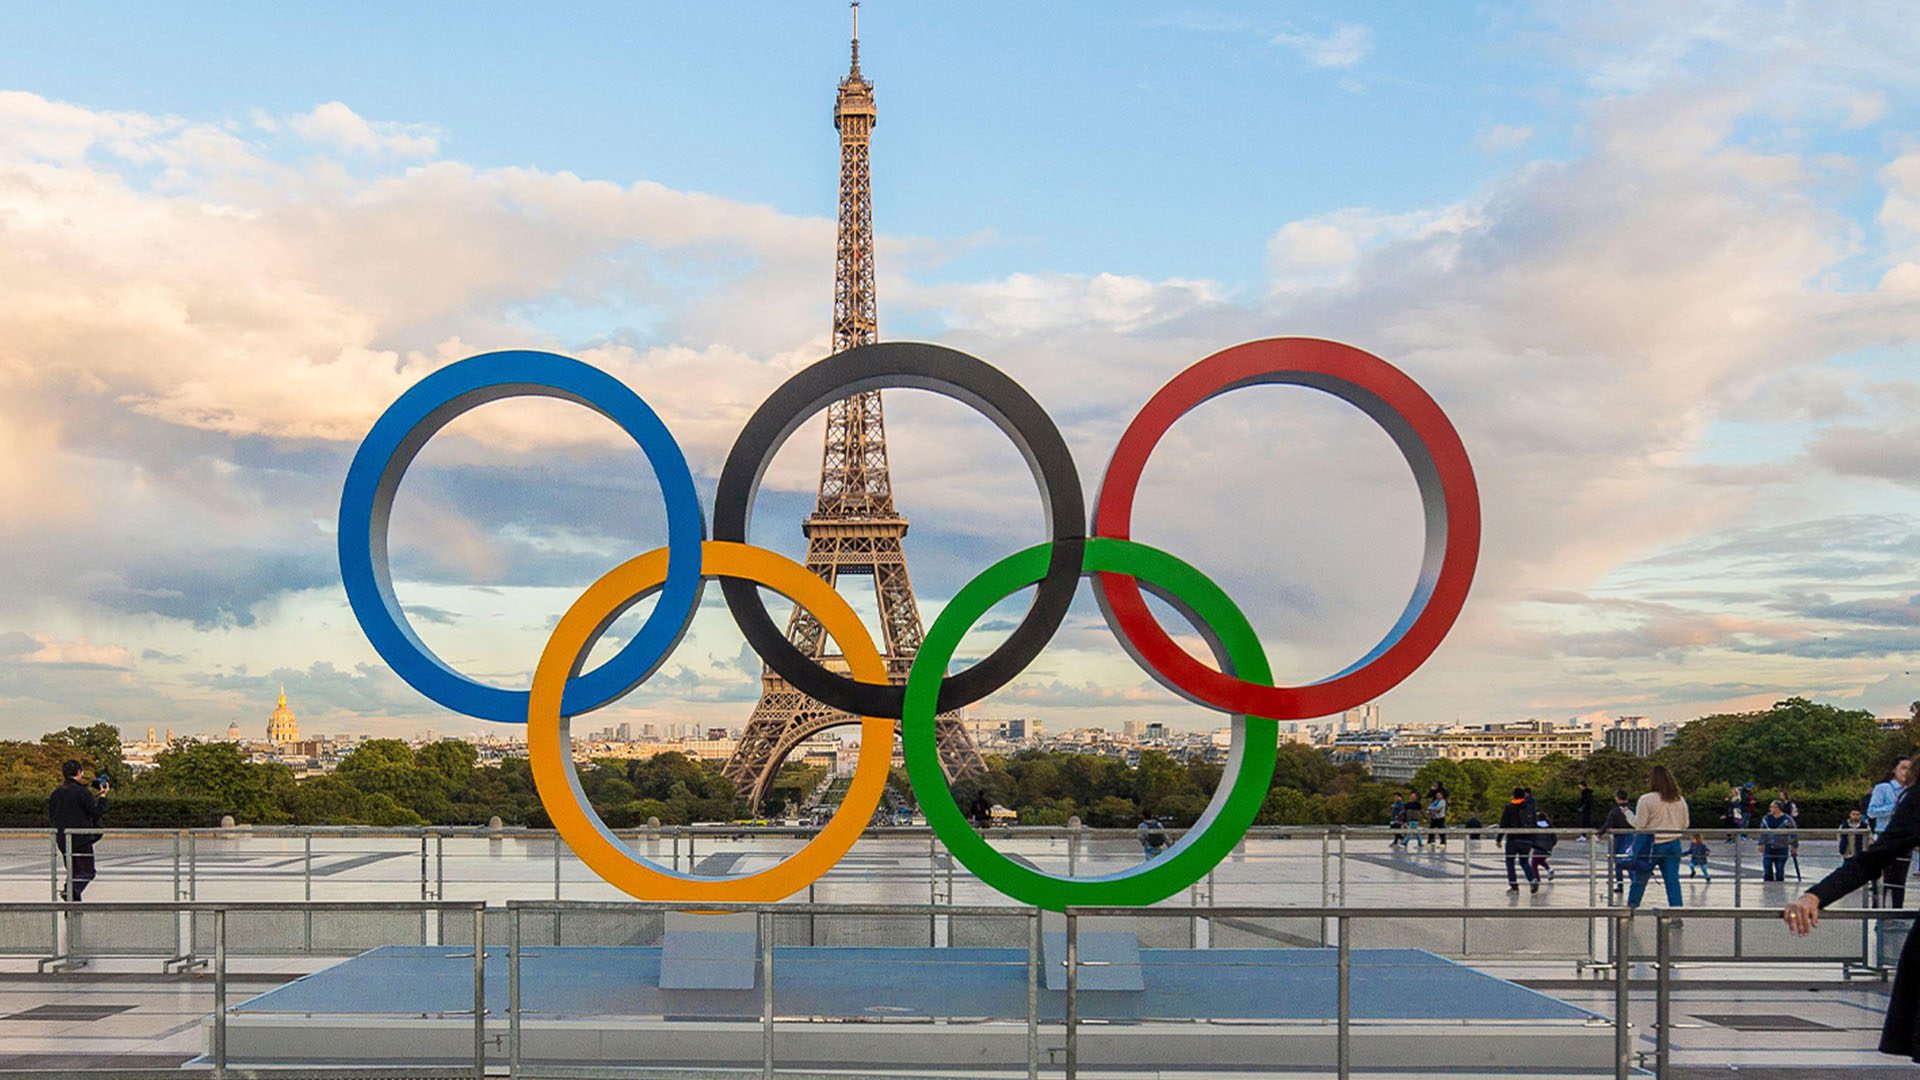 Ε.Μακρόν: Ανοικτό το ενδεχόμενο να αλλάξει ο τόπος διεξαγωγής της τελετής έναρξης των Ολυμπιακών Αγώνων